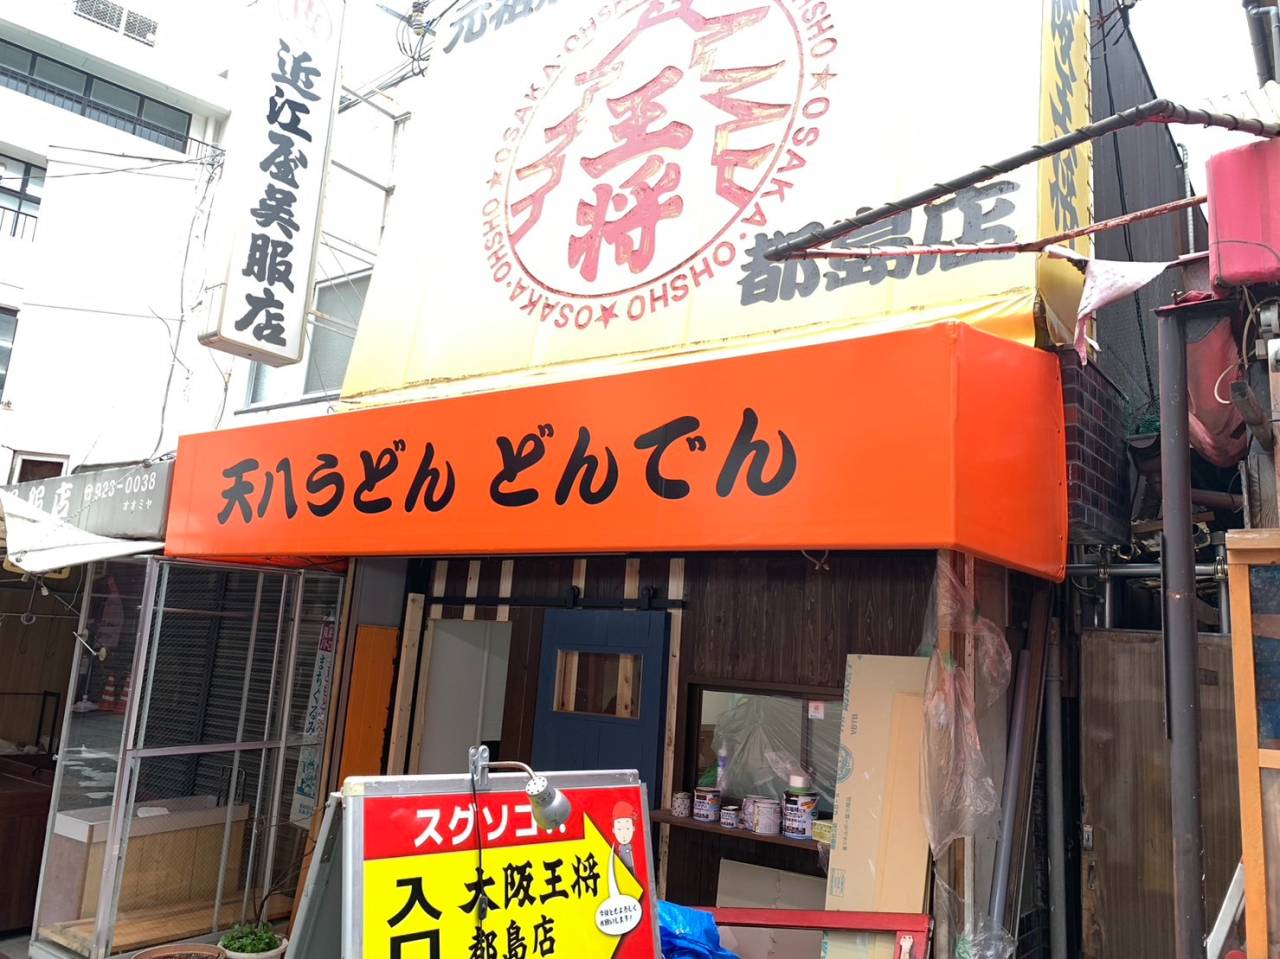 大阪市内の飲食店様の既存テント張替え致しました。（2件）